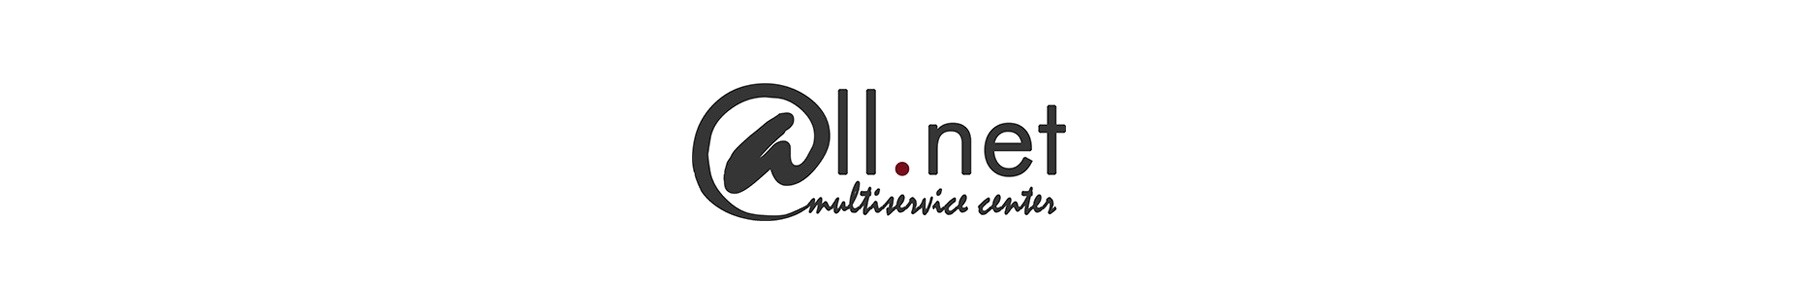 @ll net Multiservice Center